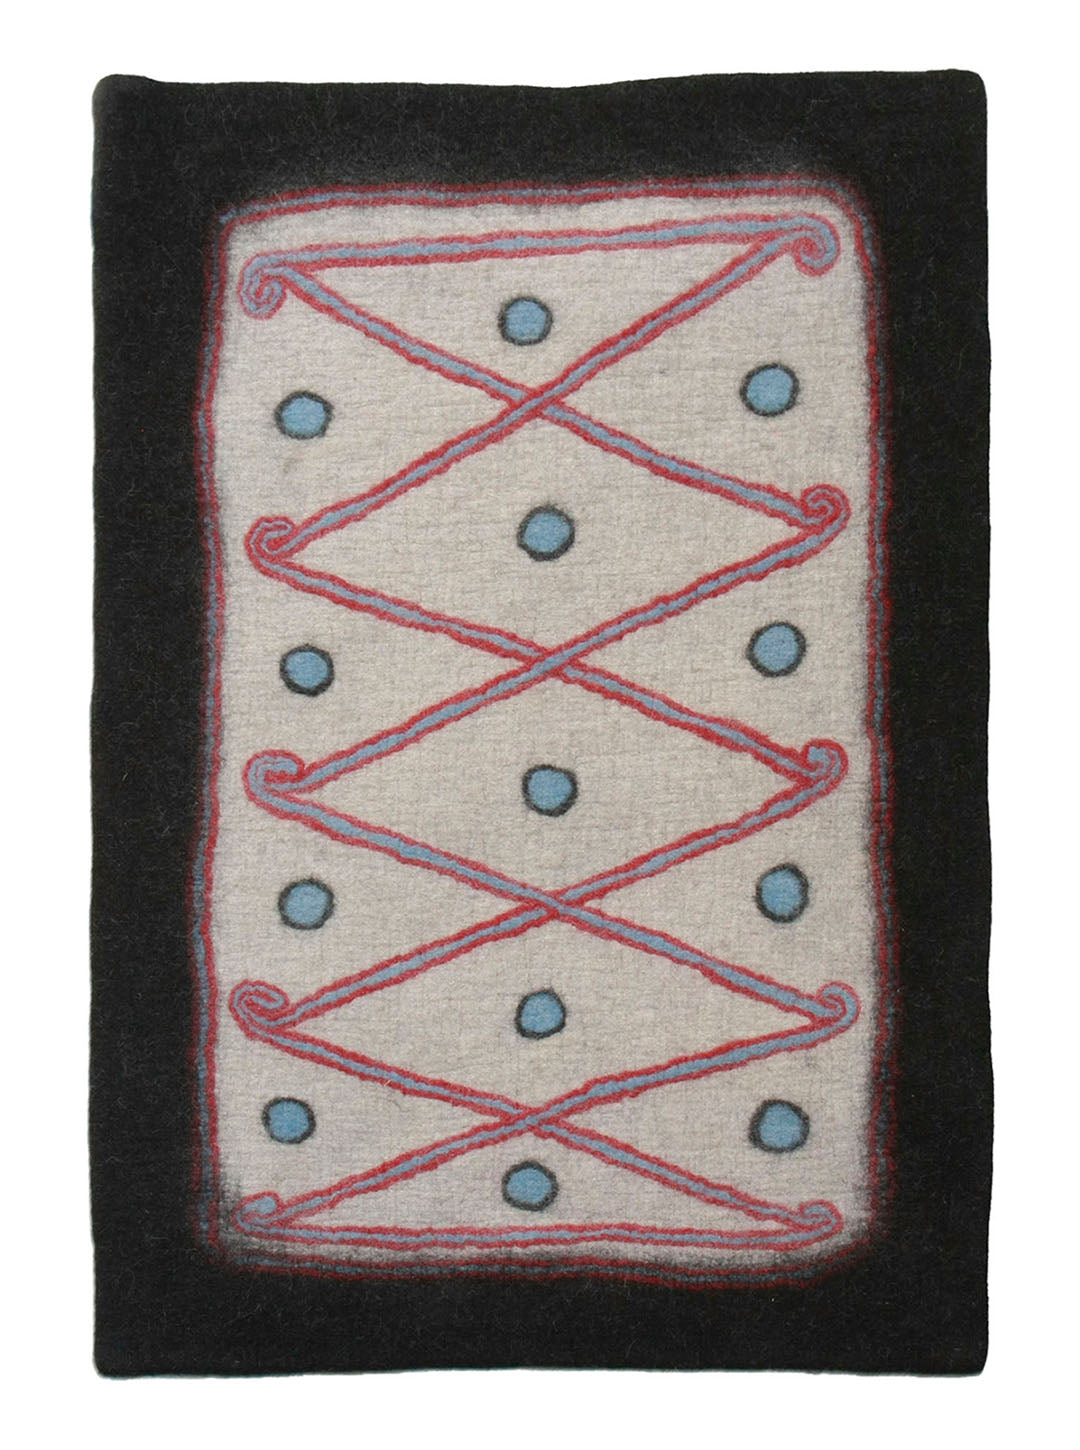 Turkman rug 4' x 6'